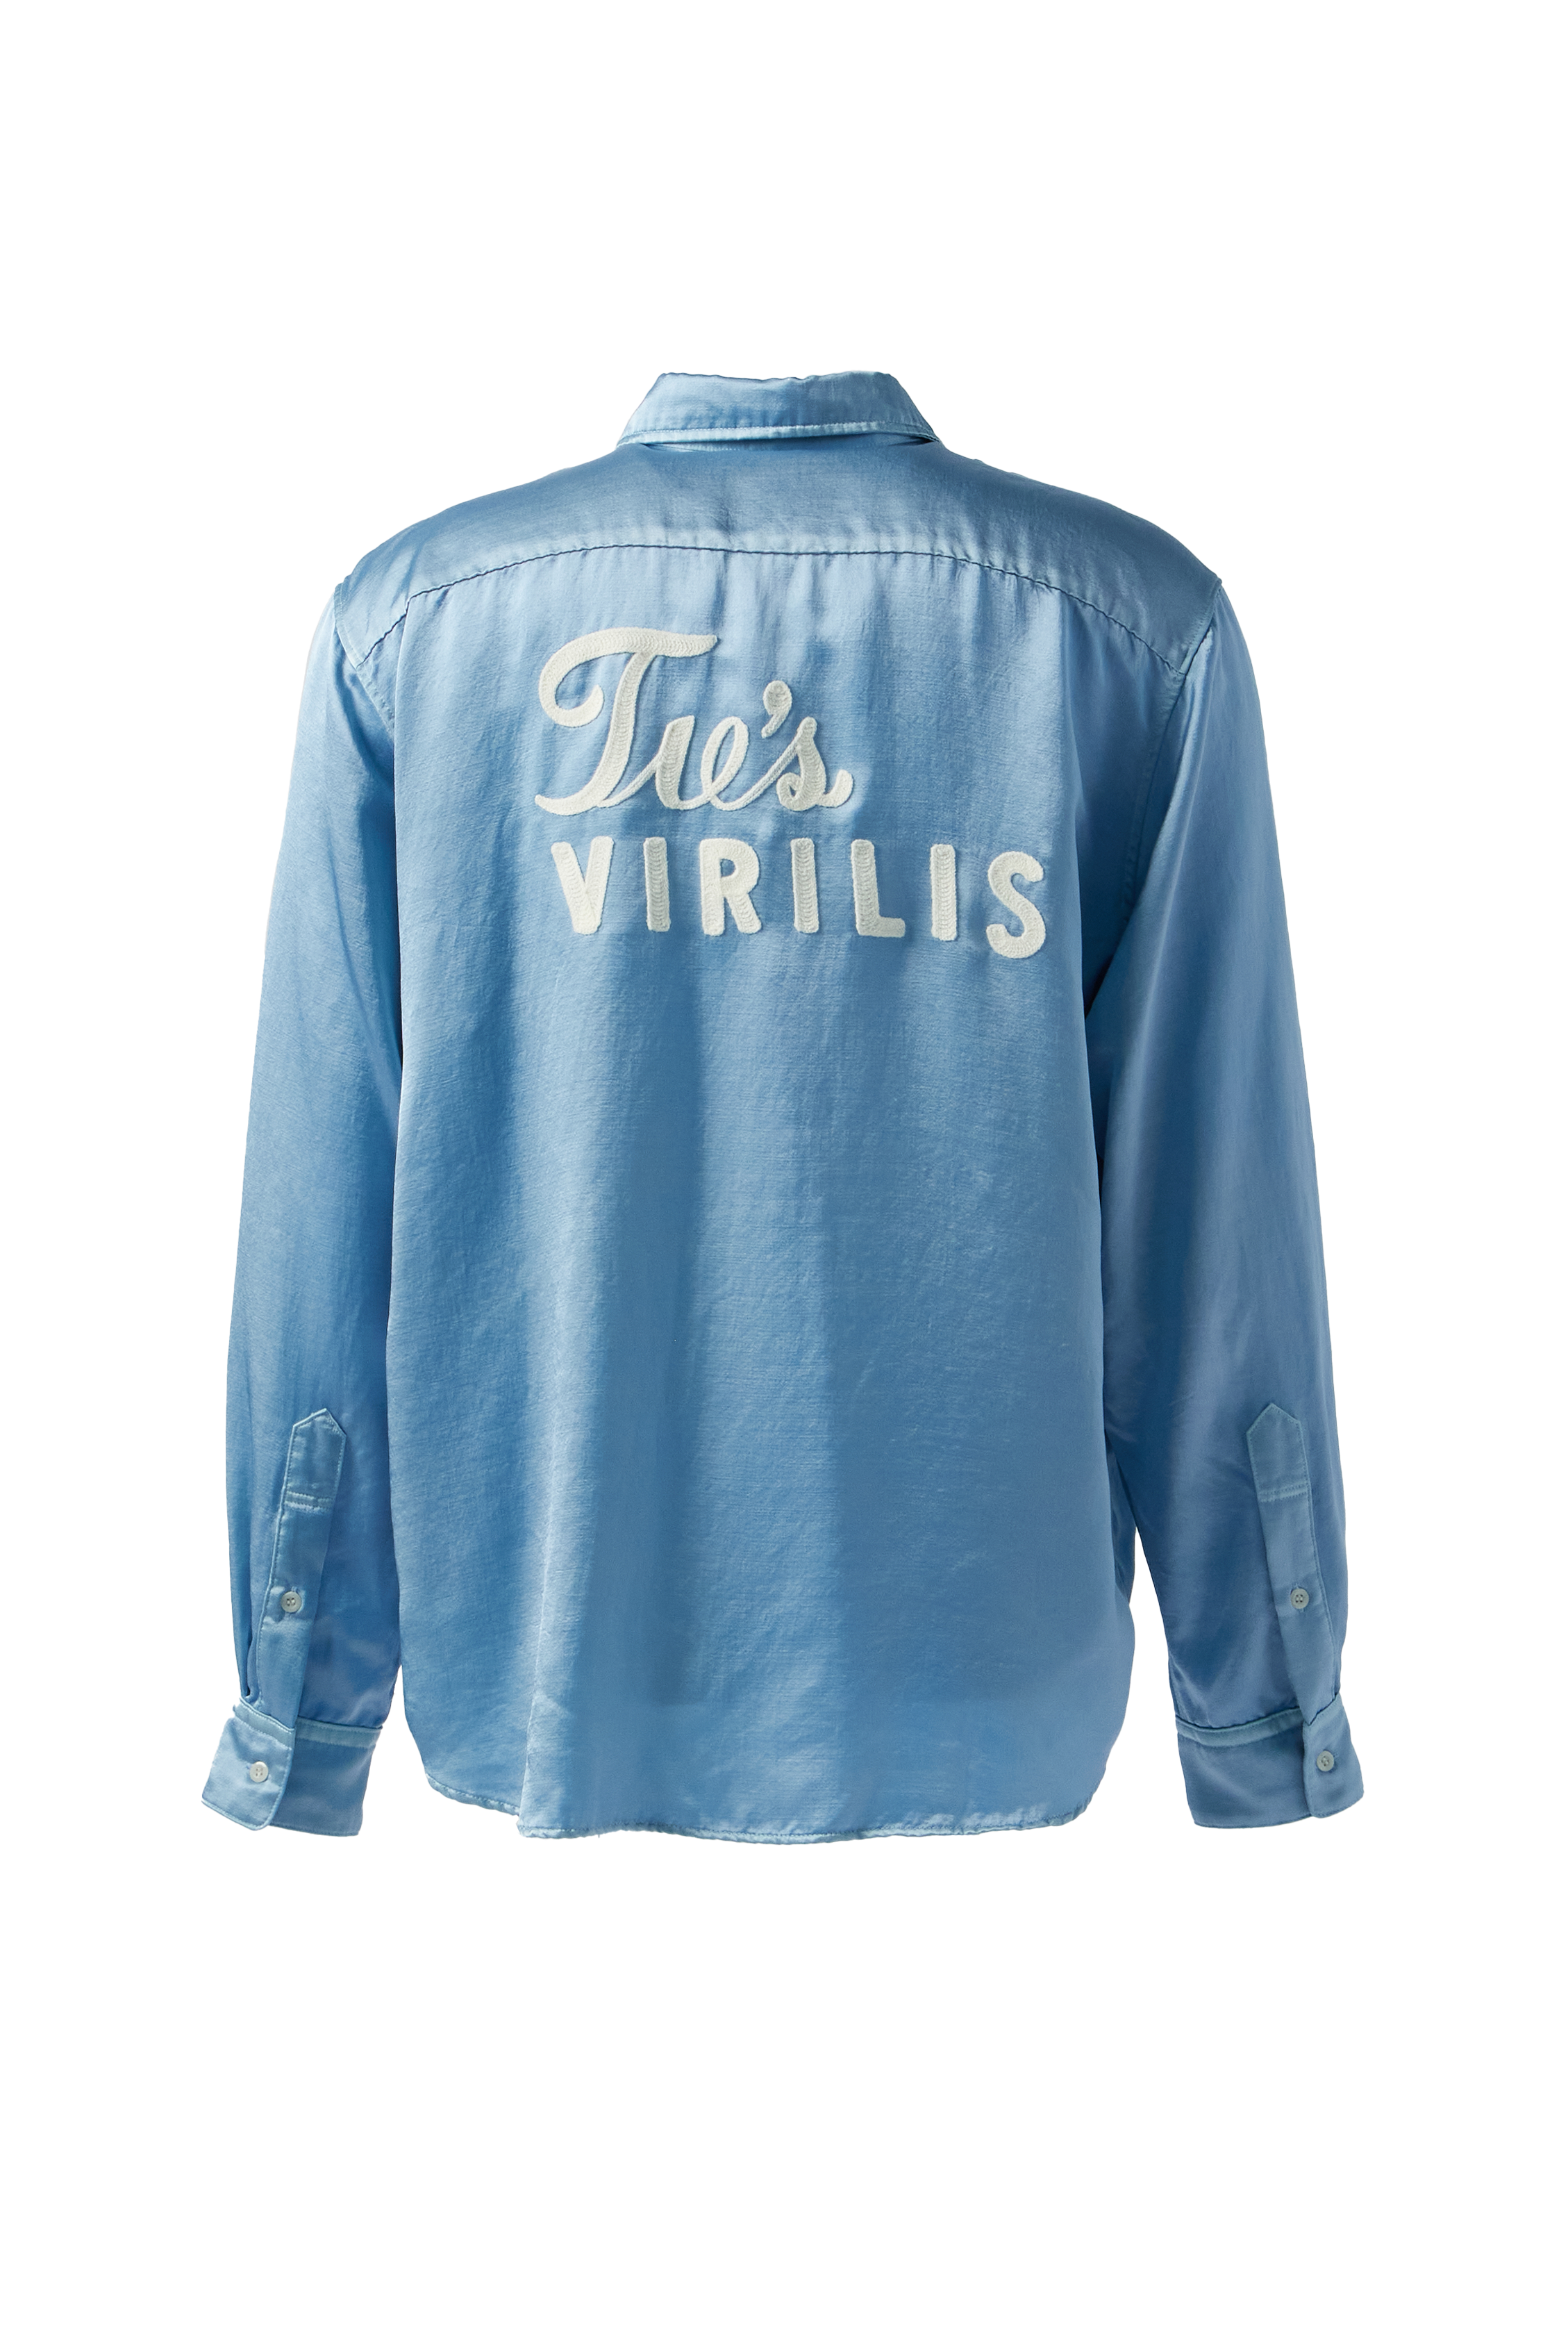 TOGA VIRILIS - Satin Shirt product image